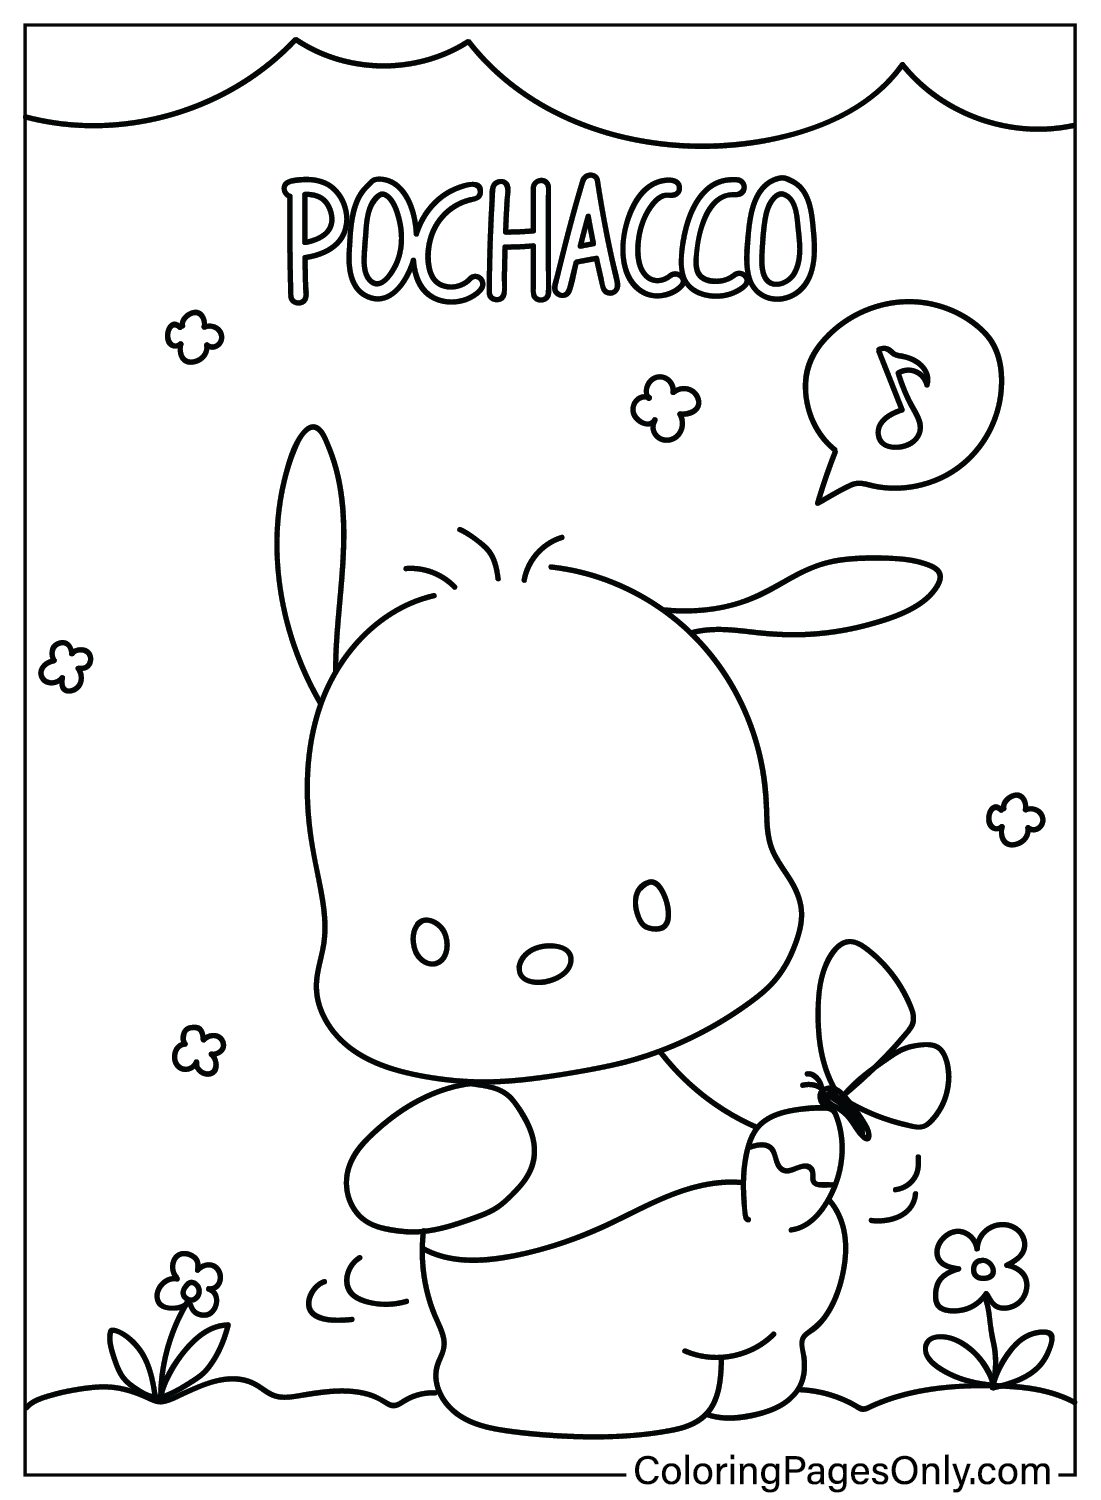 Página para colorear de Pochacco gratis de Pochacco